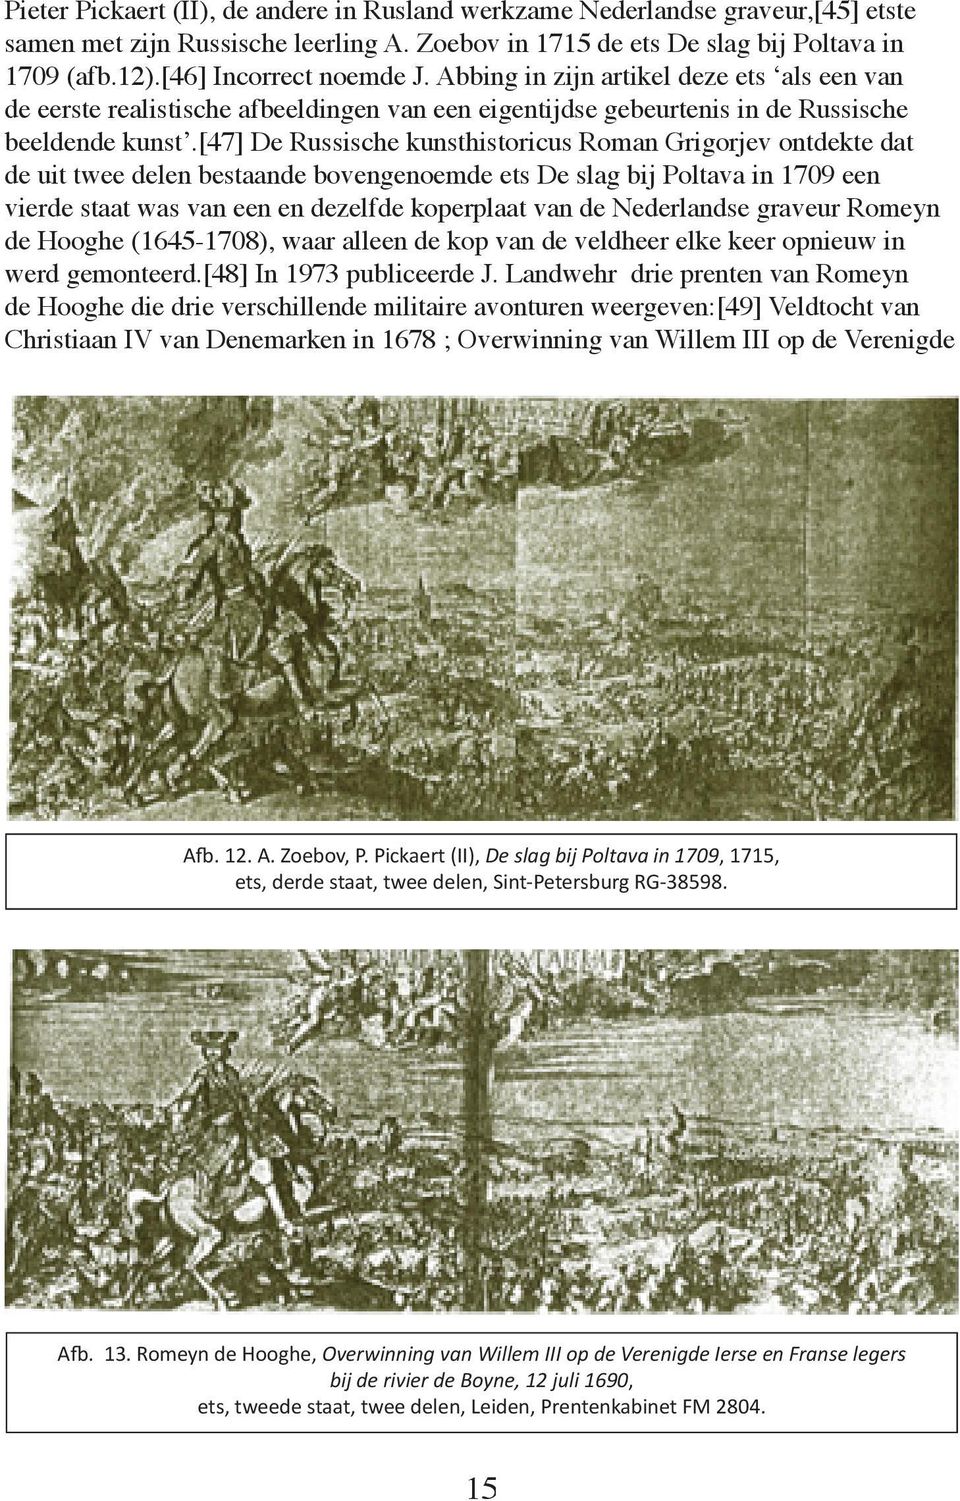 [47] De Russische kunsthistoricus Roman Grigorjev ontdekte dat de uit twee delen bestaande bovengenoemde ets De slag bij Poltava in 1709 een vierde staat was van een en dezelfde koperplaat van de